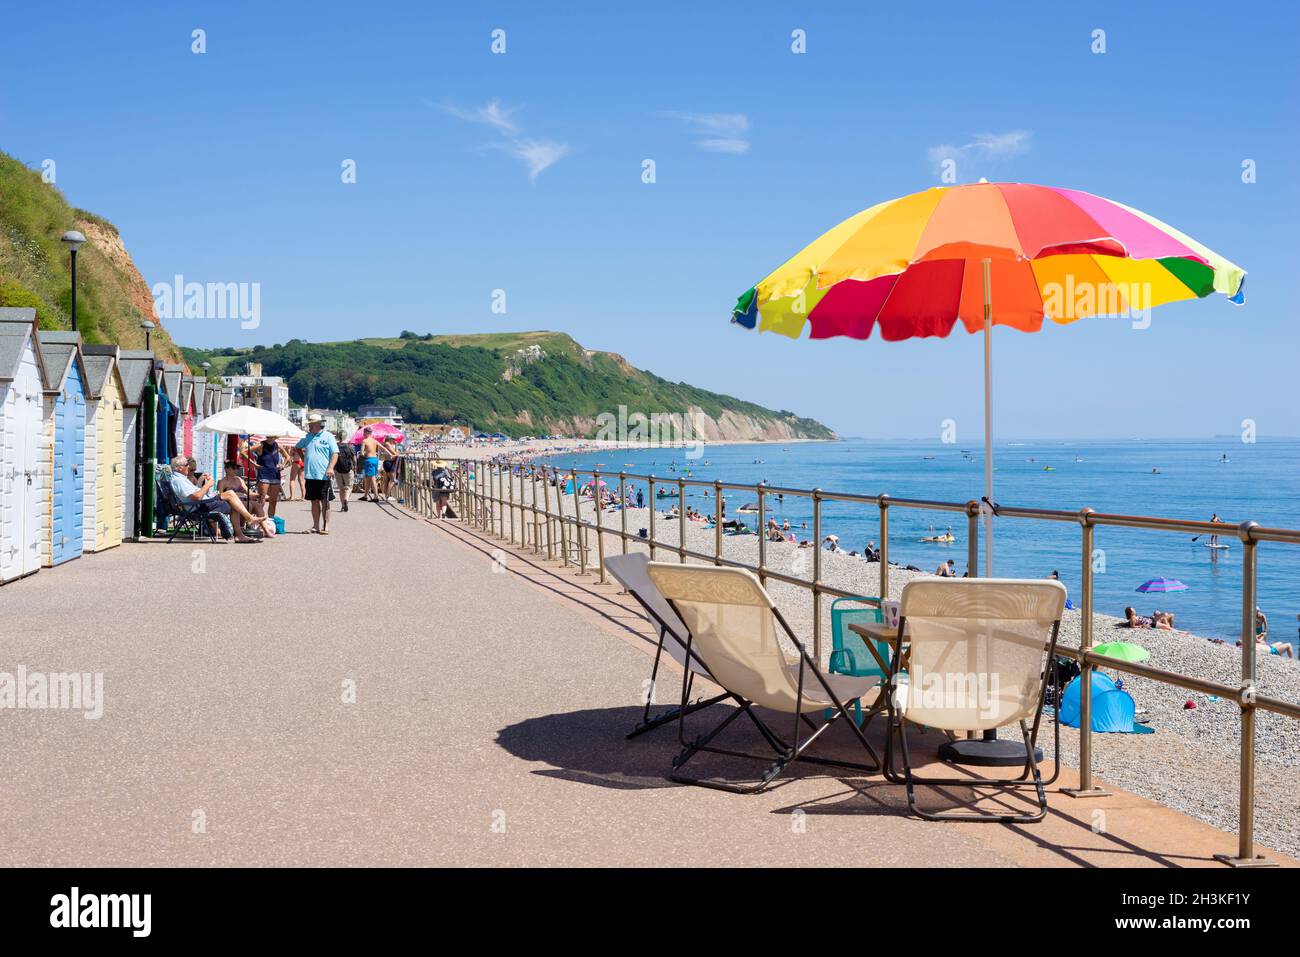 Seaton Devon personnes bronzer et utiliser des parasols de plage près des cabines de plage le long de la promenade à Seaton Devon Angleterre GB Europe Banque D'Images